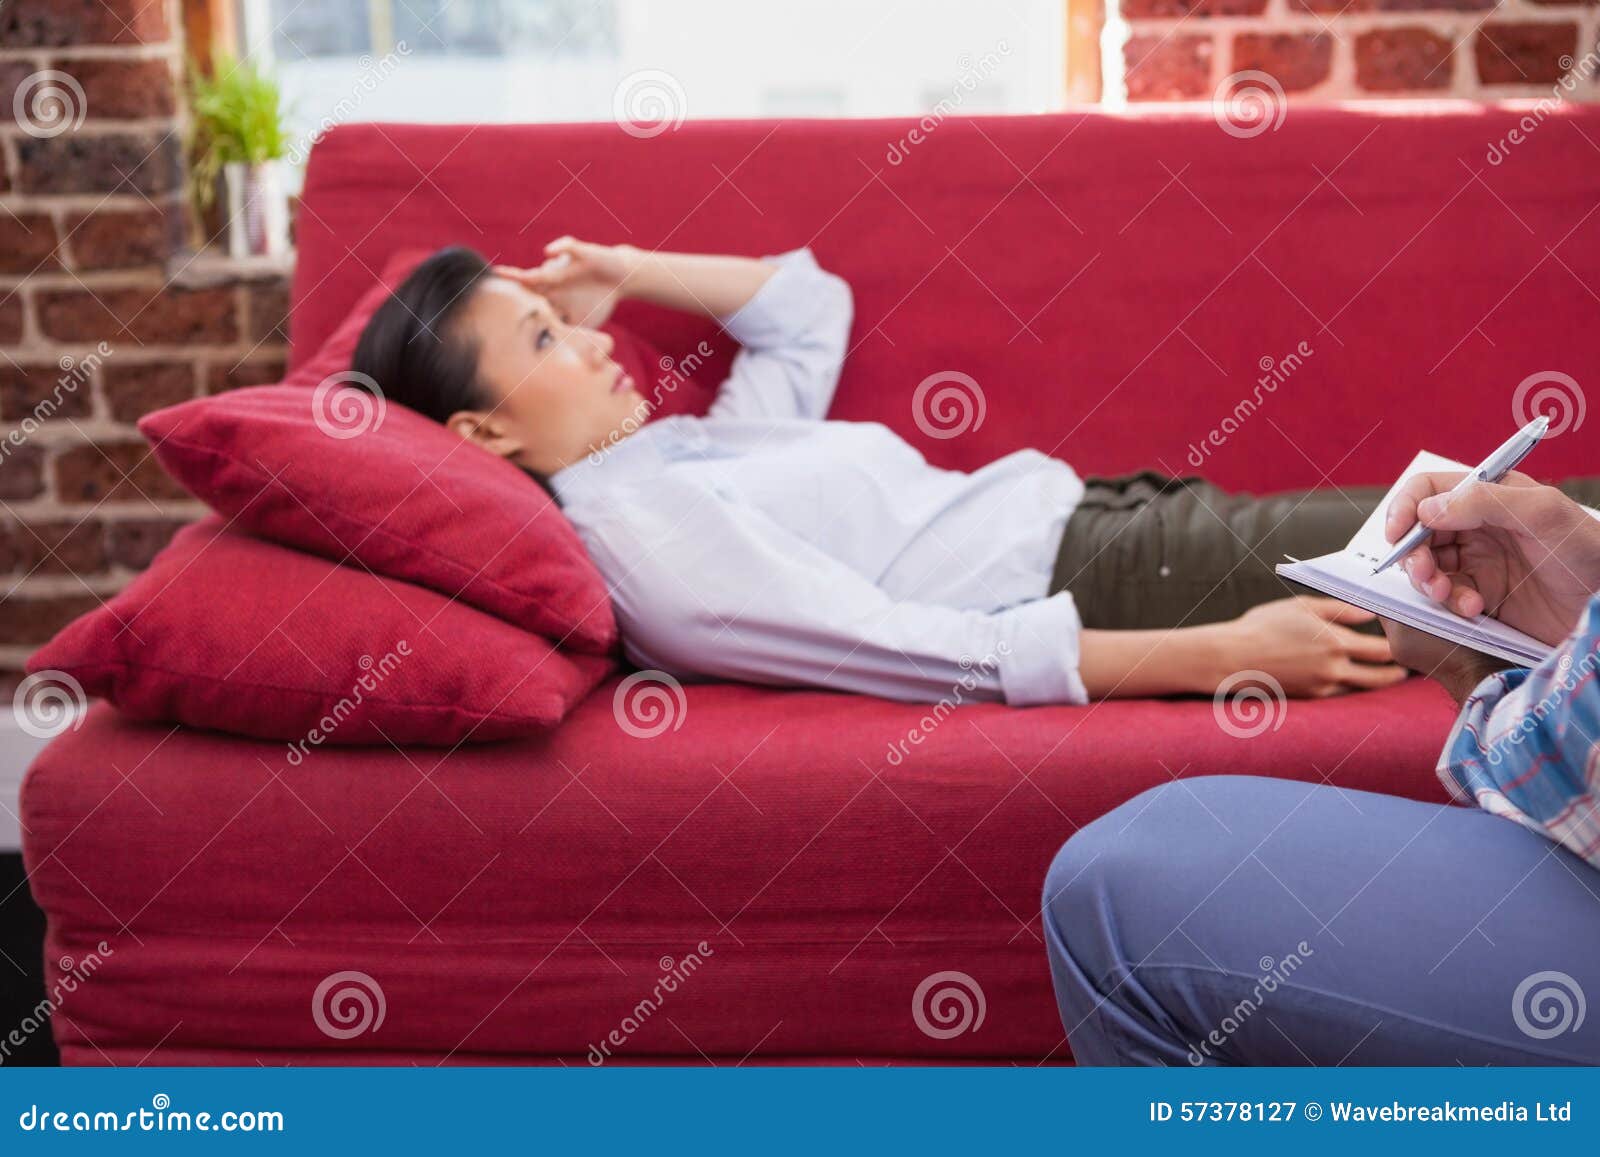 Лежат или лижат. Подросток лежит на диване. Фотосессия депрессия. Пресс лежа на диване. Софа спать.